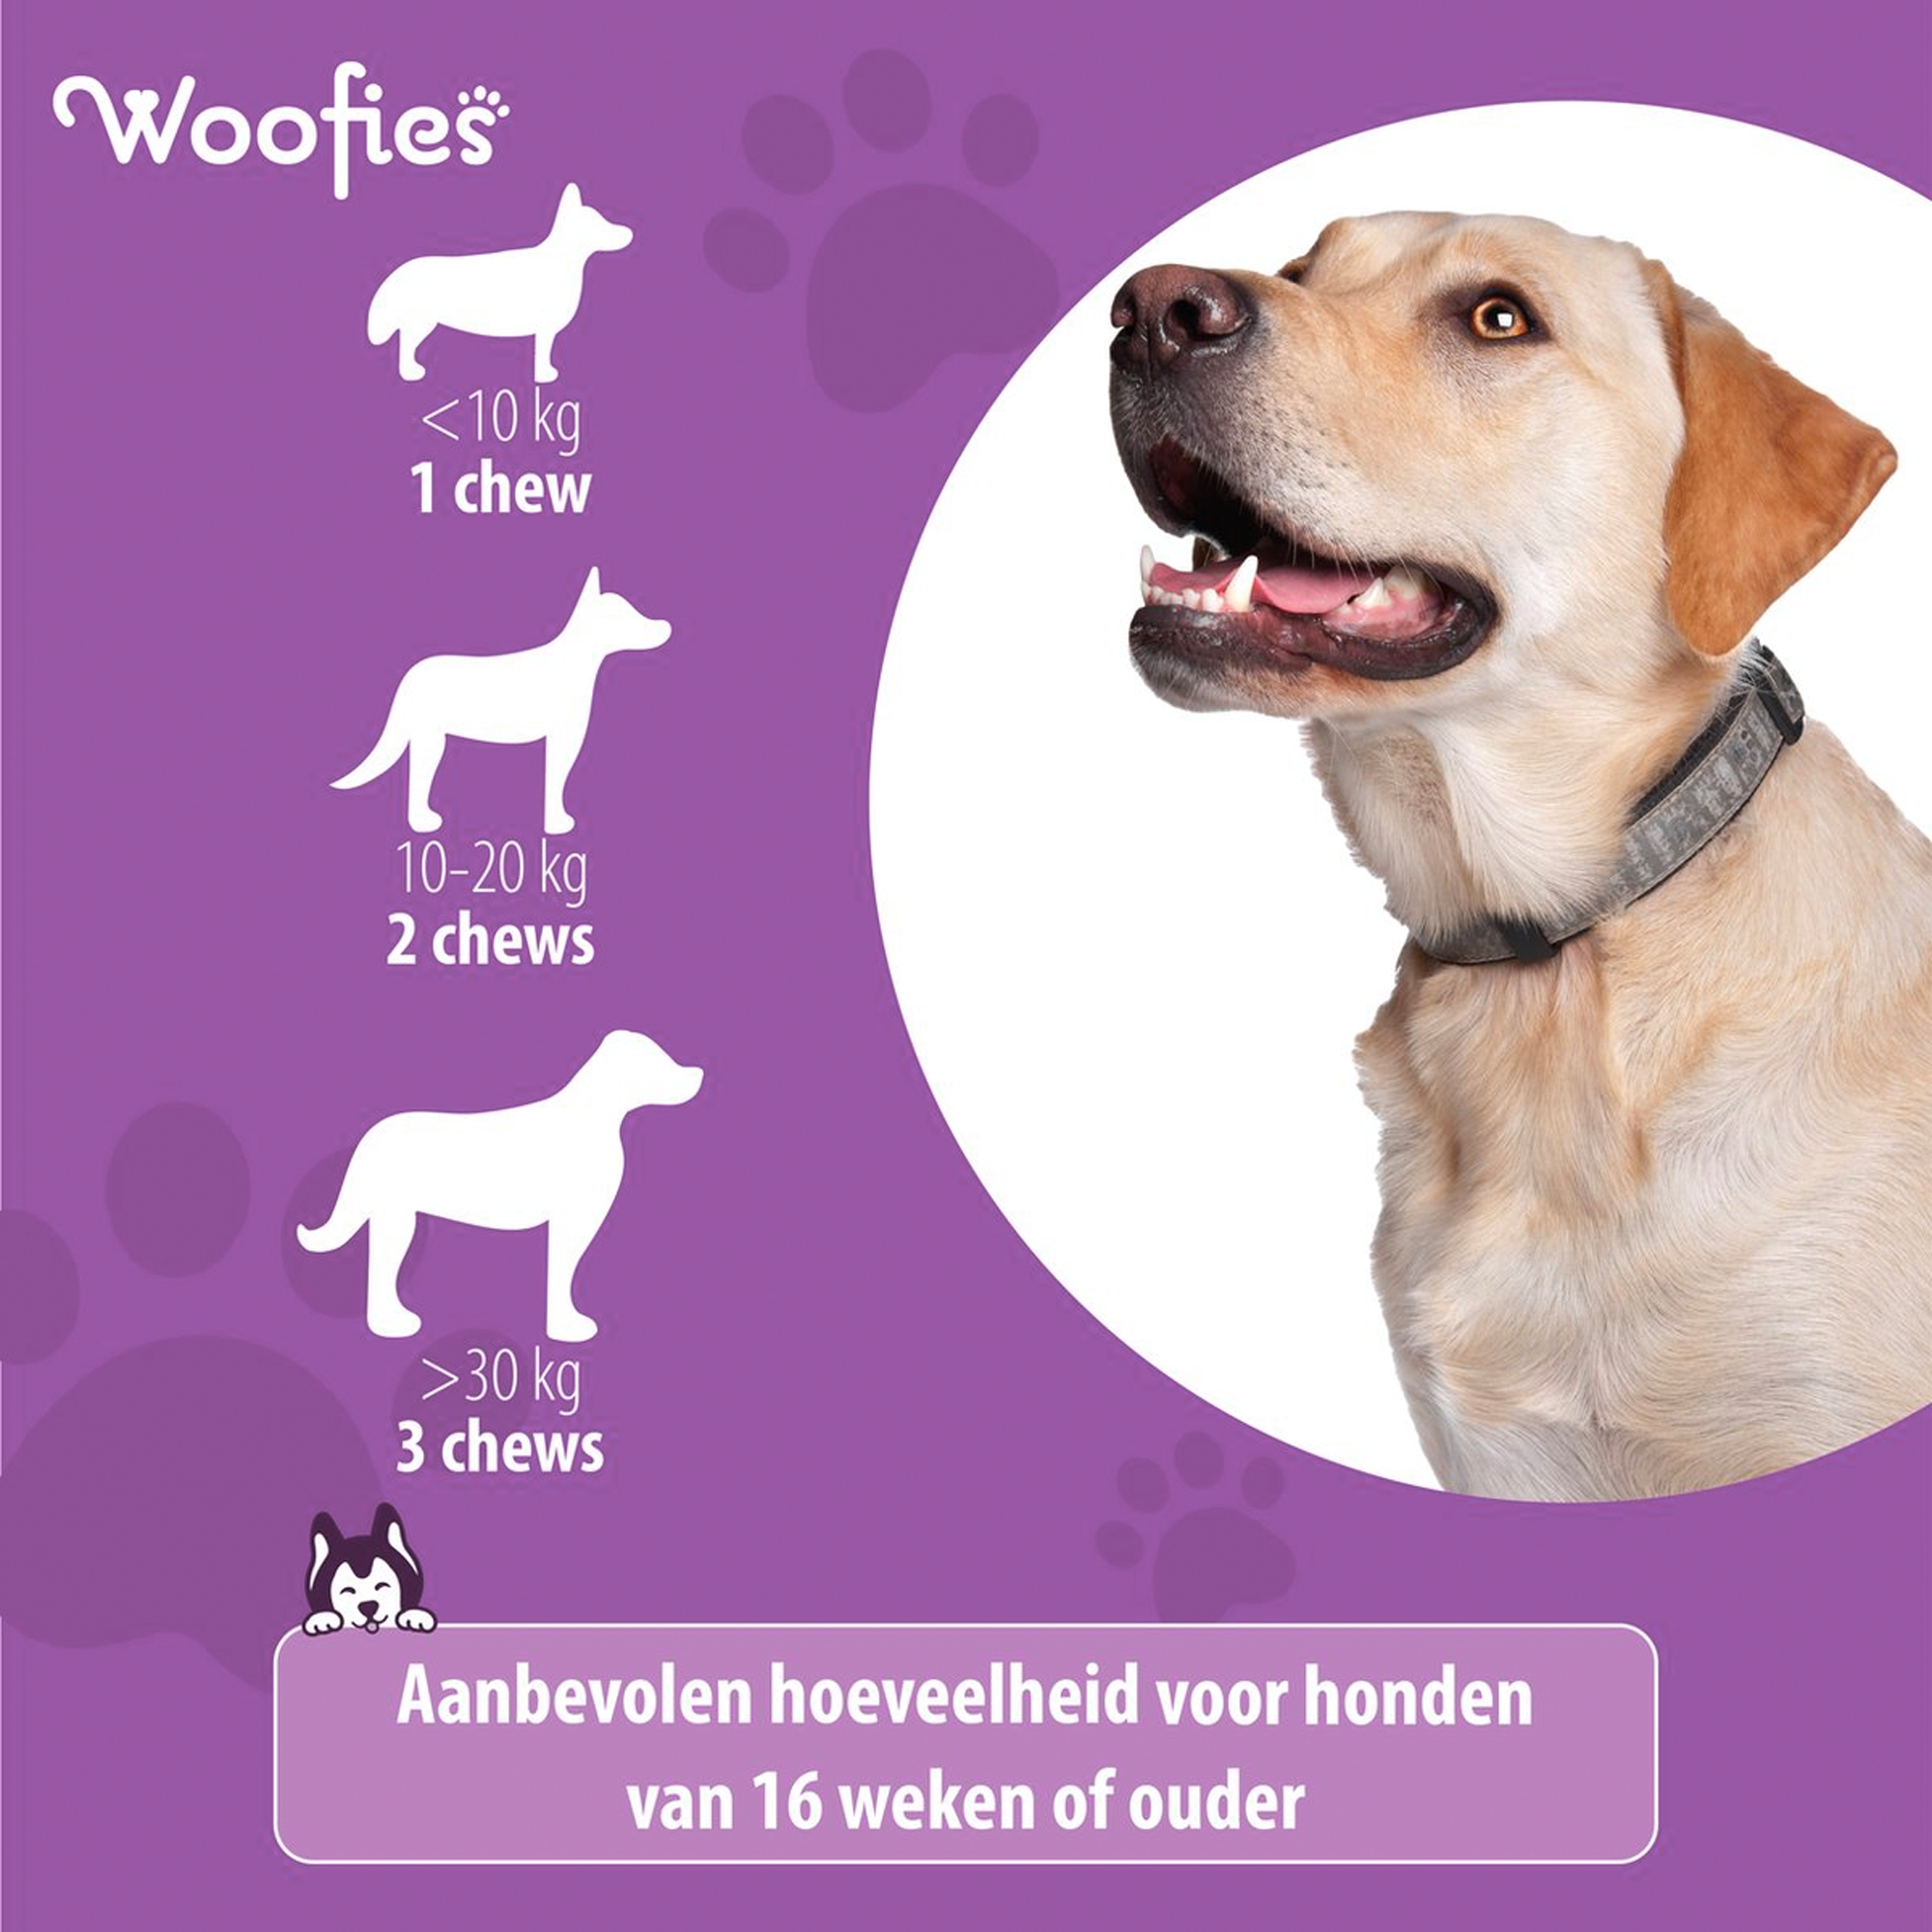 evreden klant deelt ervaring met Woofies Allergy Support snoepjes, merkbare verlichting van allergie symptomen bij hun hond.